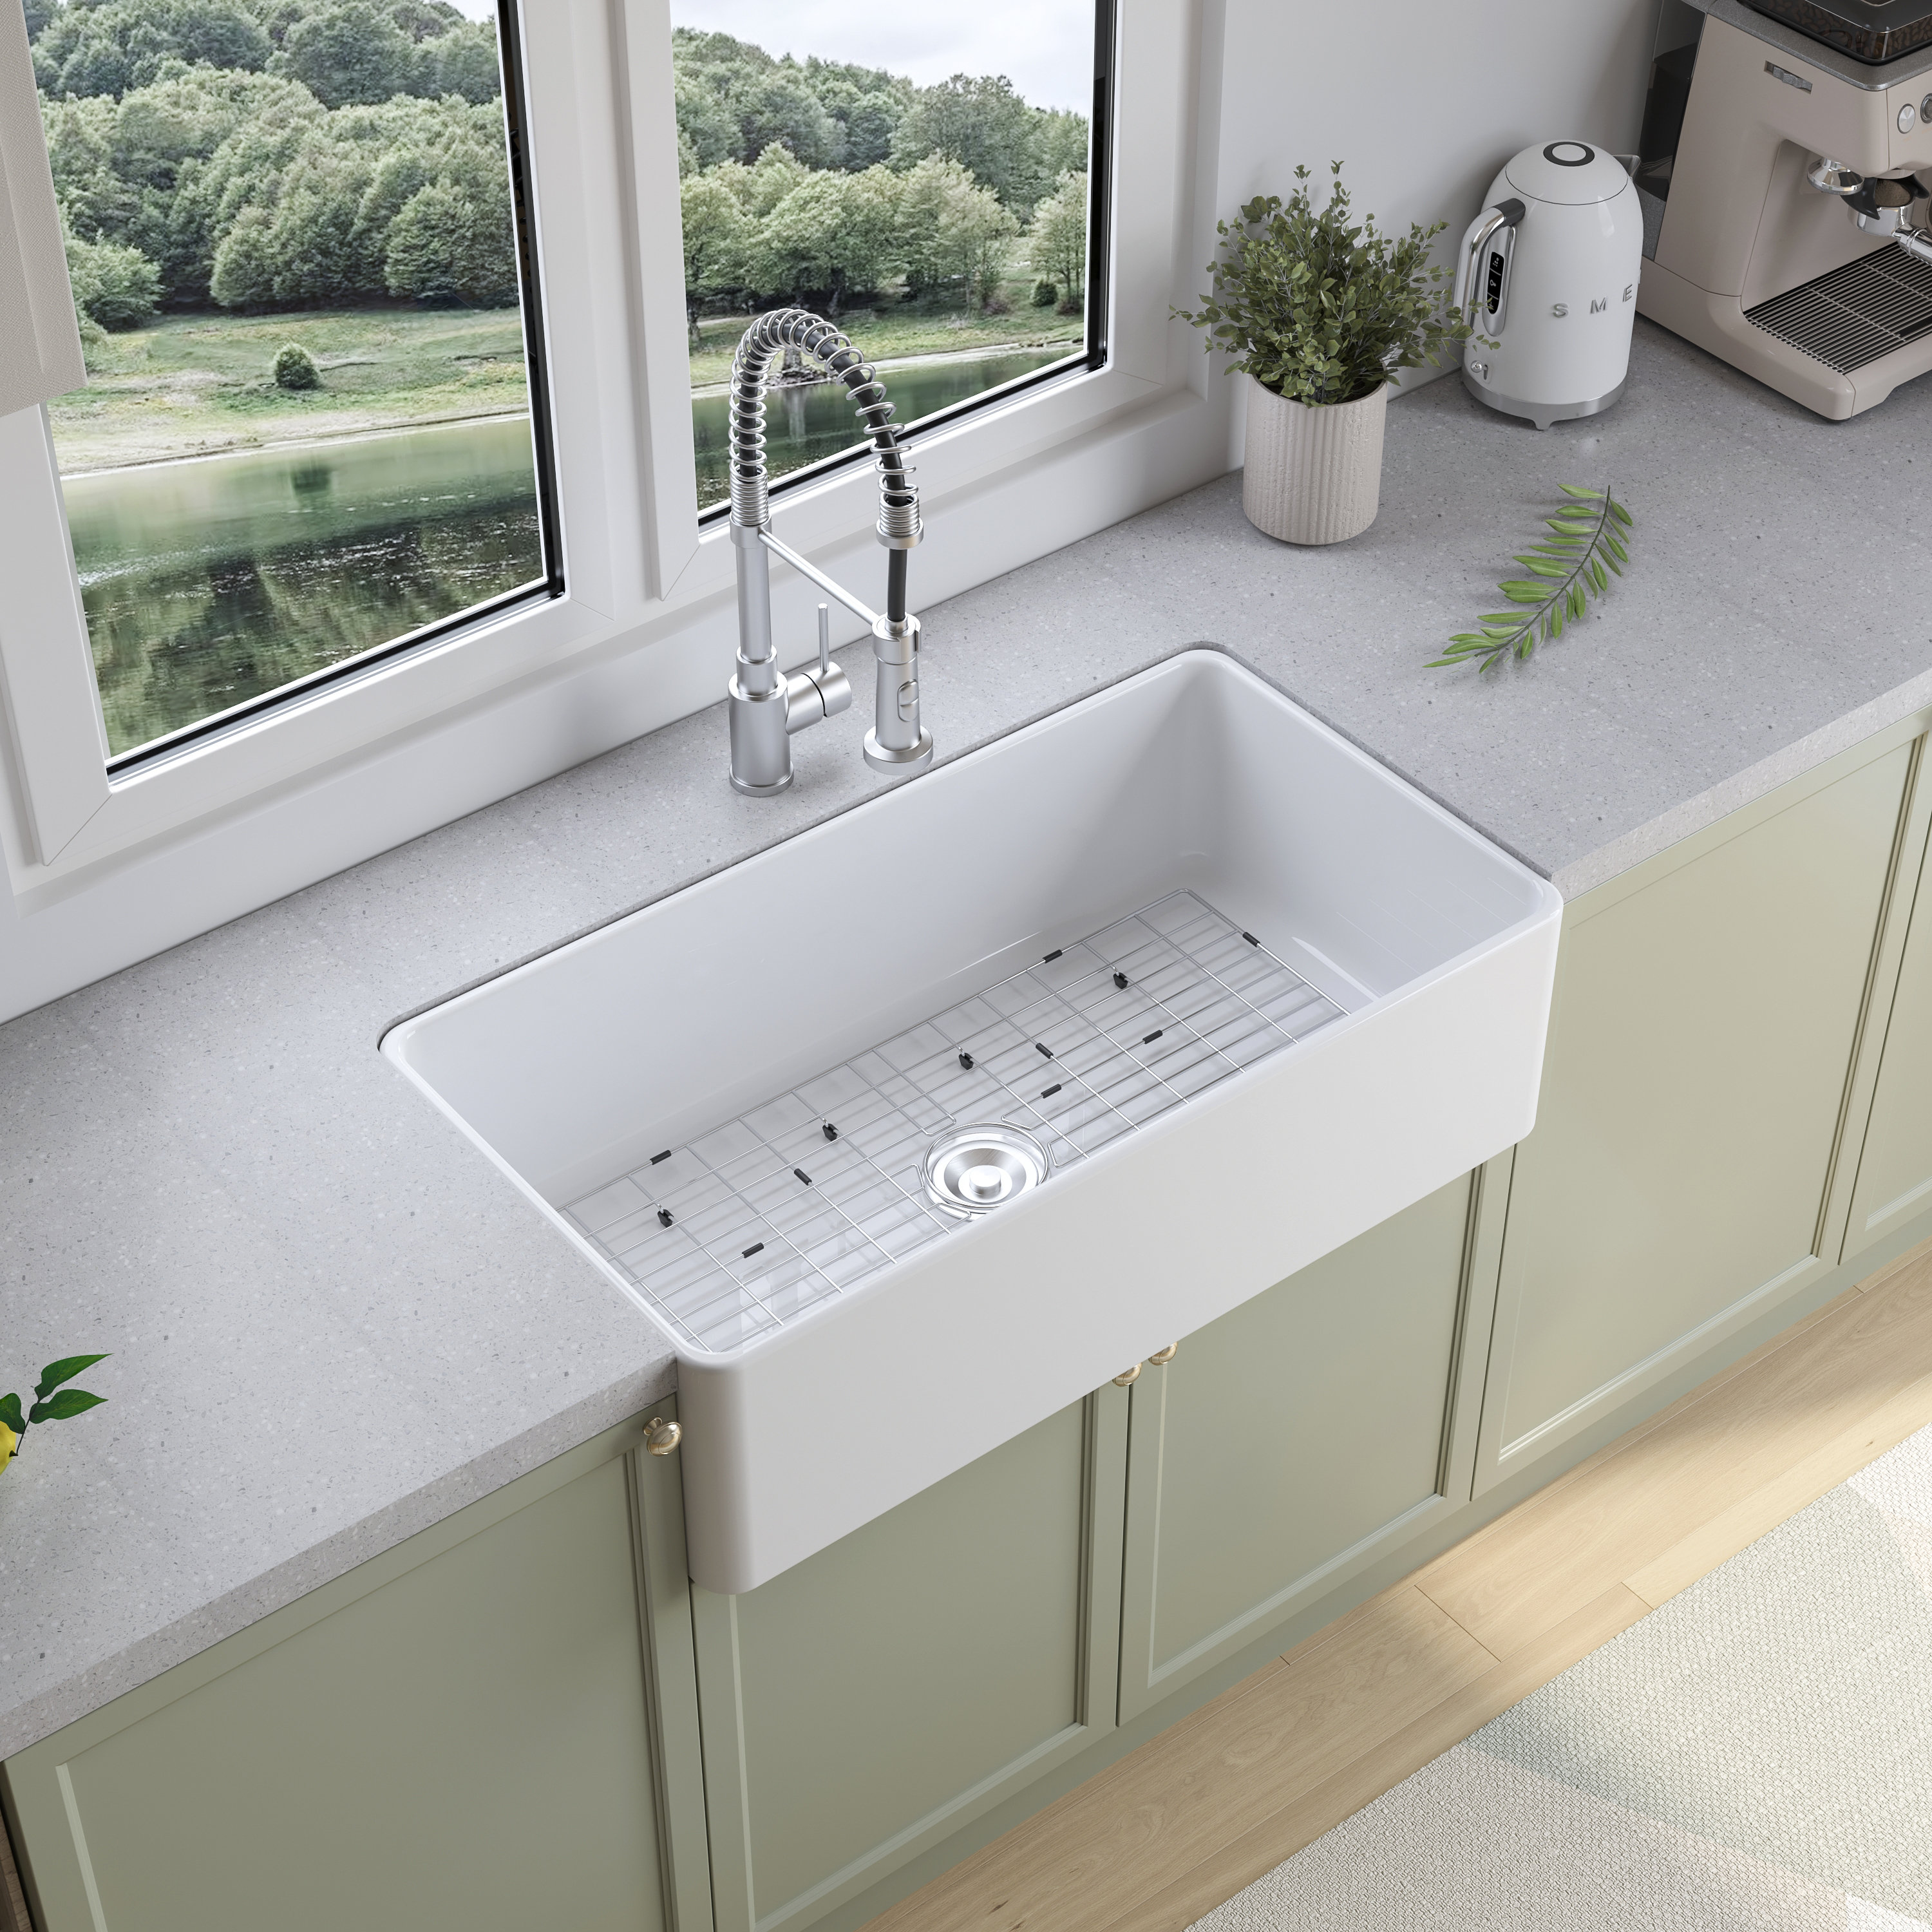 Design House Kitchen Sink Drain Strainer Stainless Steel